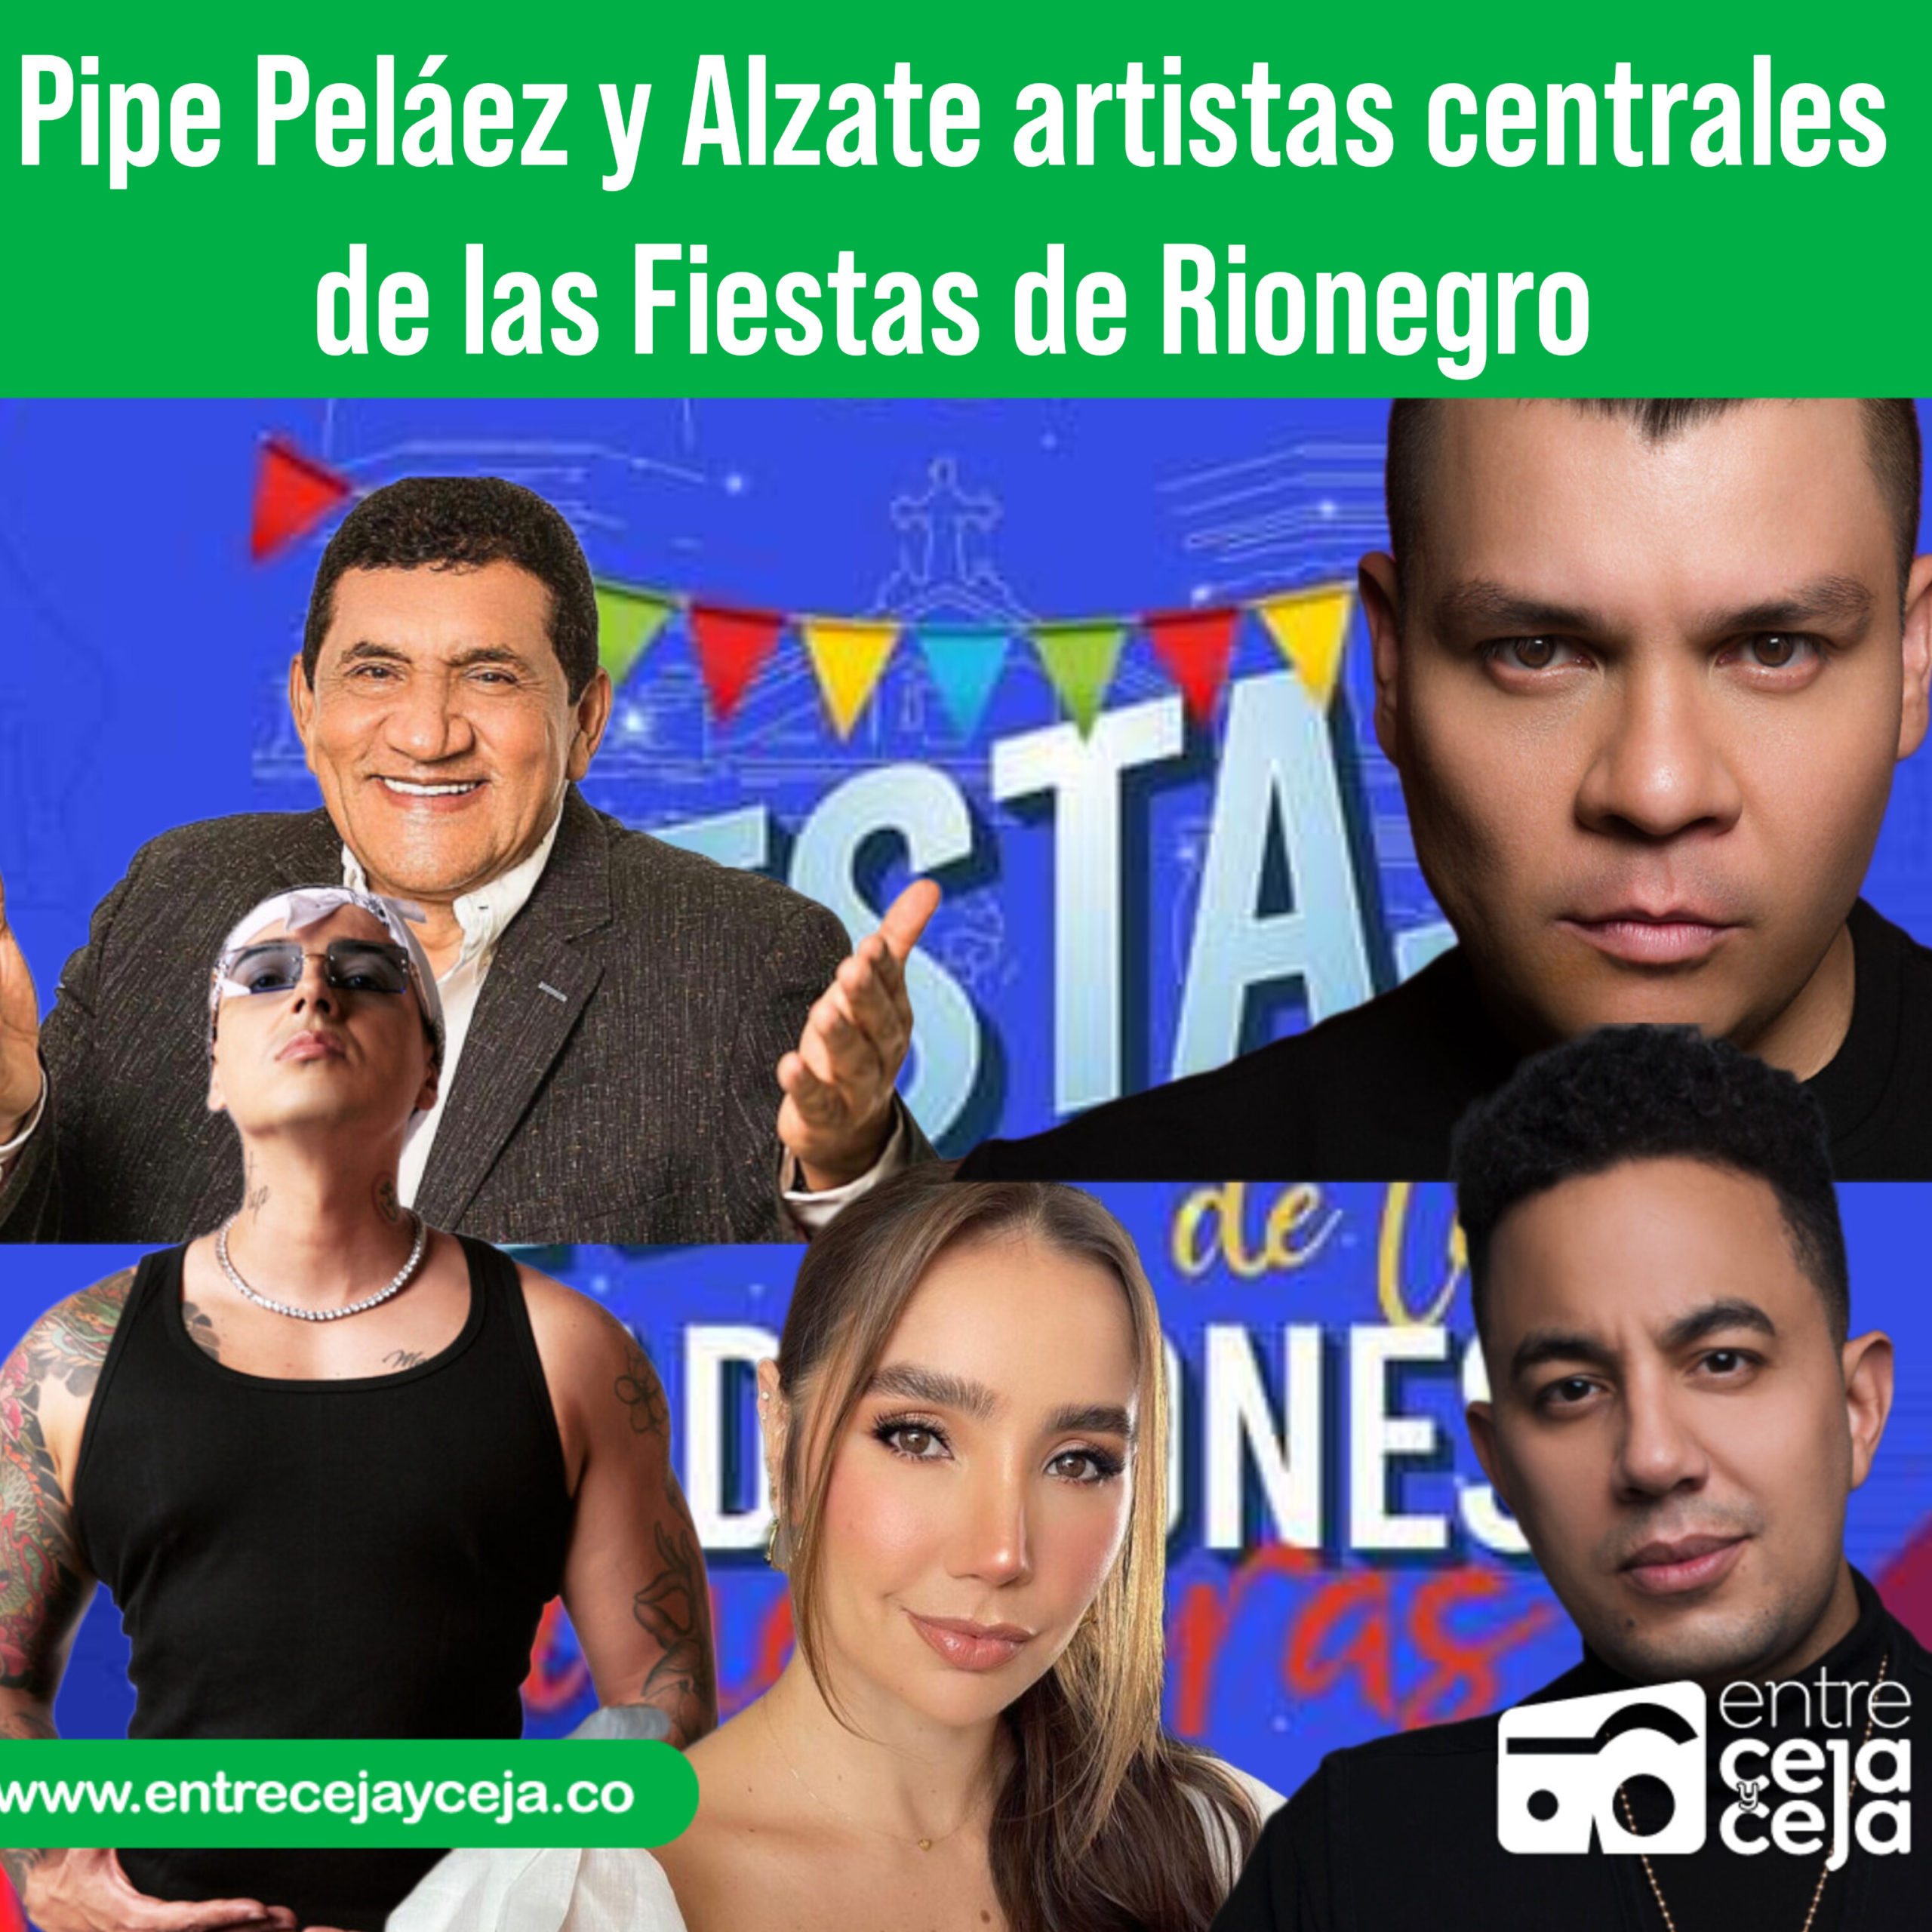 Artistas locales serán los protagonistas de las fiestas de Rionegro versión 2022